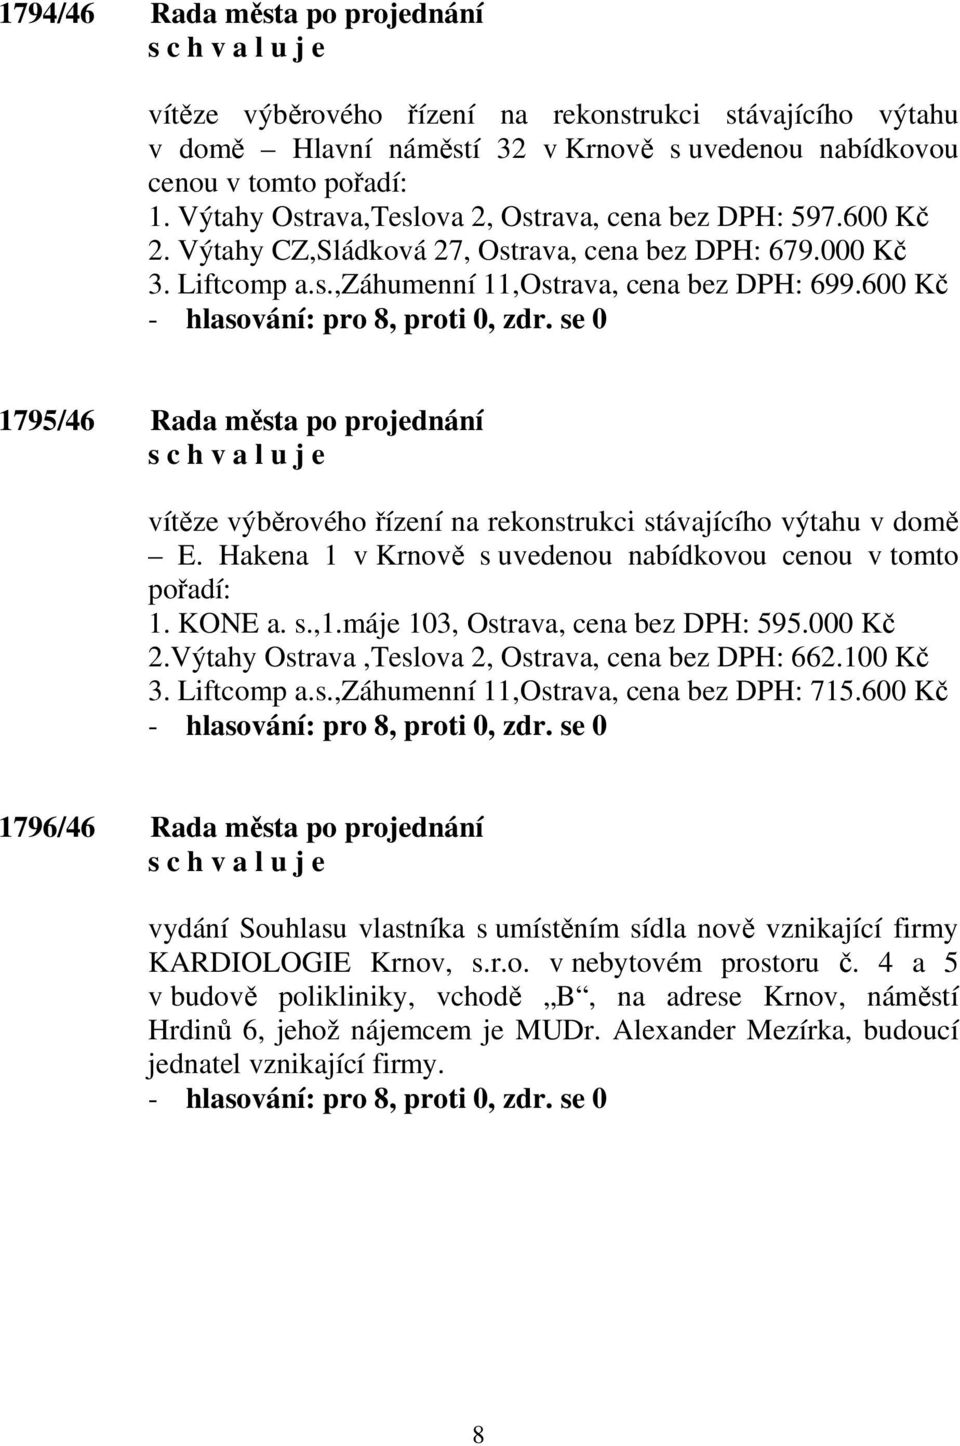 600 Kč 1795/46 Rada města po projednání vítěze výběrového řízení na rekonstrukci stávajícího výtahu v domě E. Hakena 1 v Krnově s uvedenou nabídkovou cenou v tomto pořadí: 1. KONE a. s.,1.